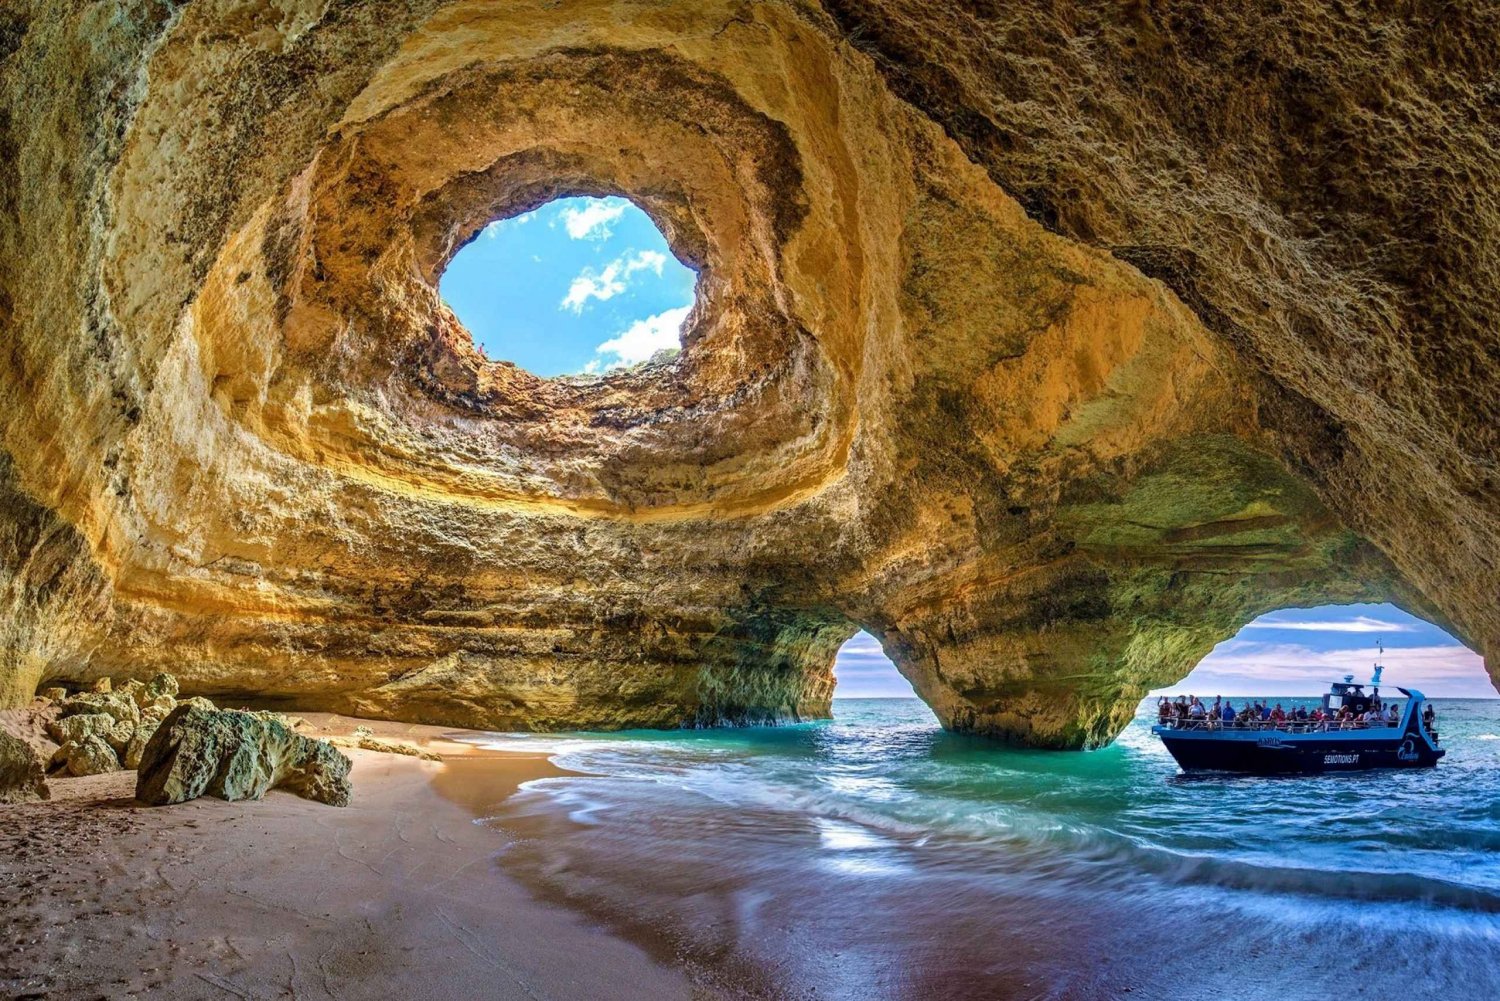 Portimão: Grotten van Benagil & Dolfijnen kijken met bioloog